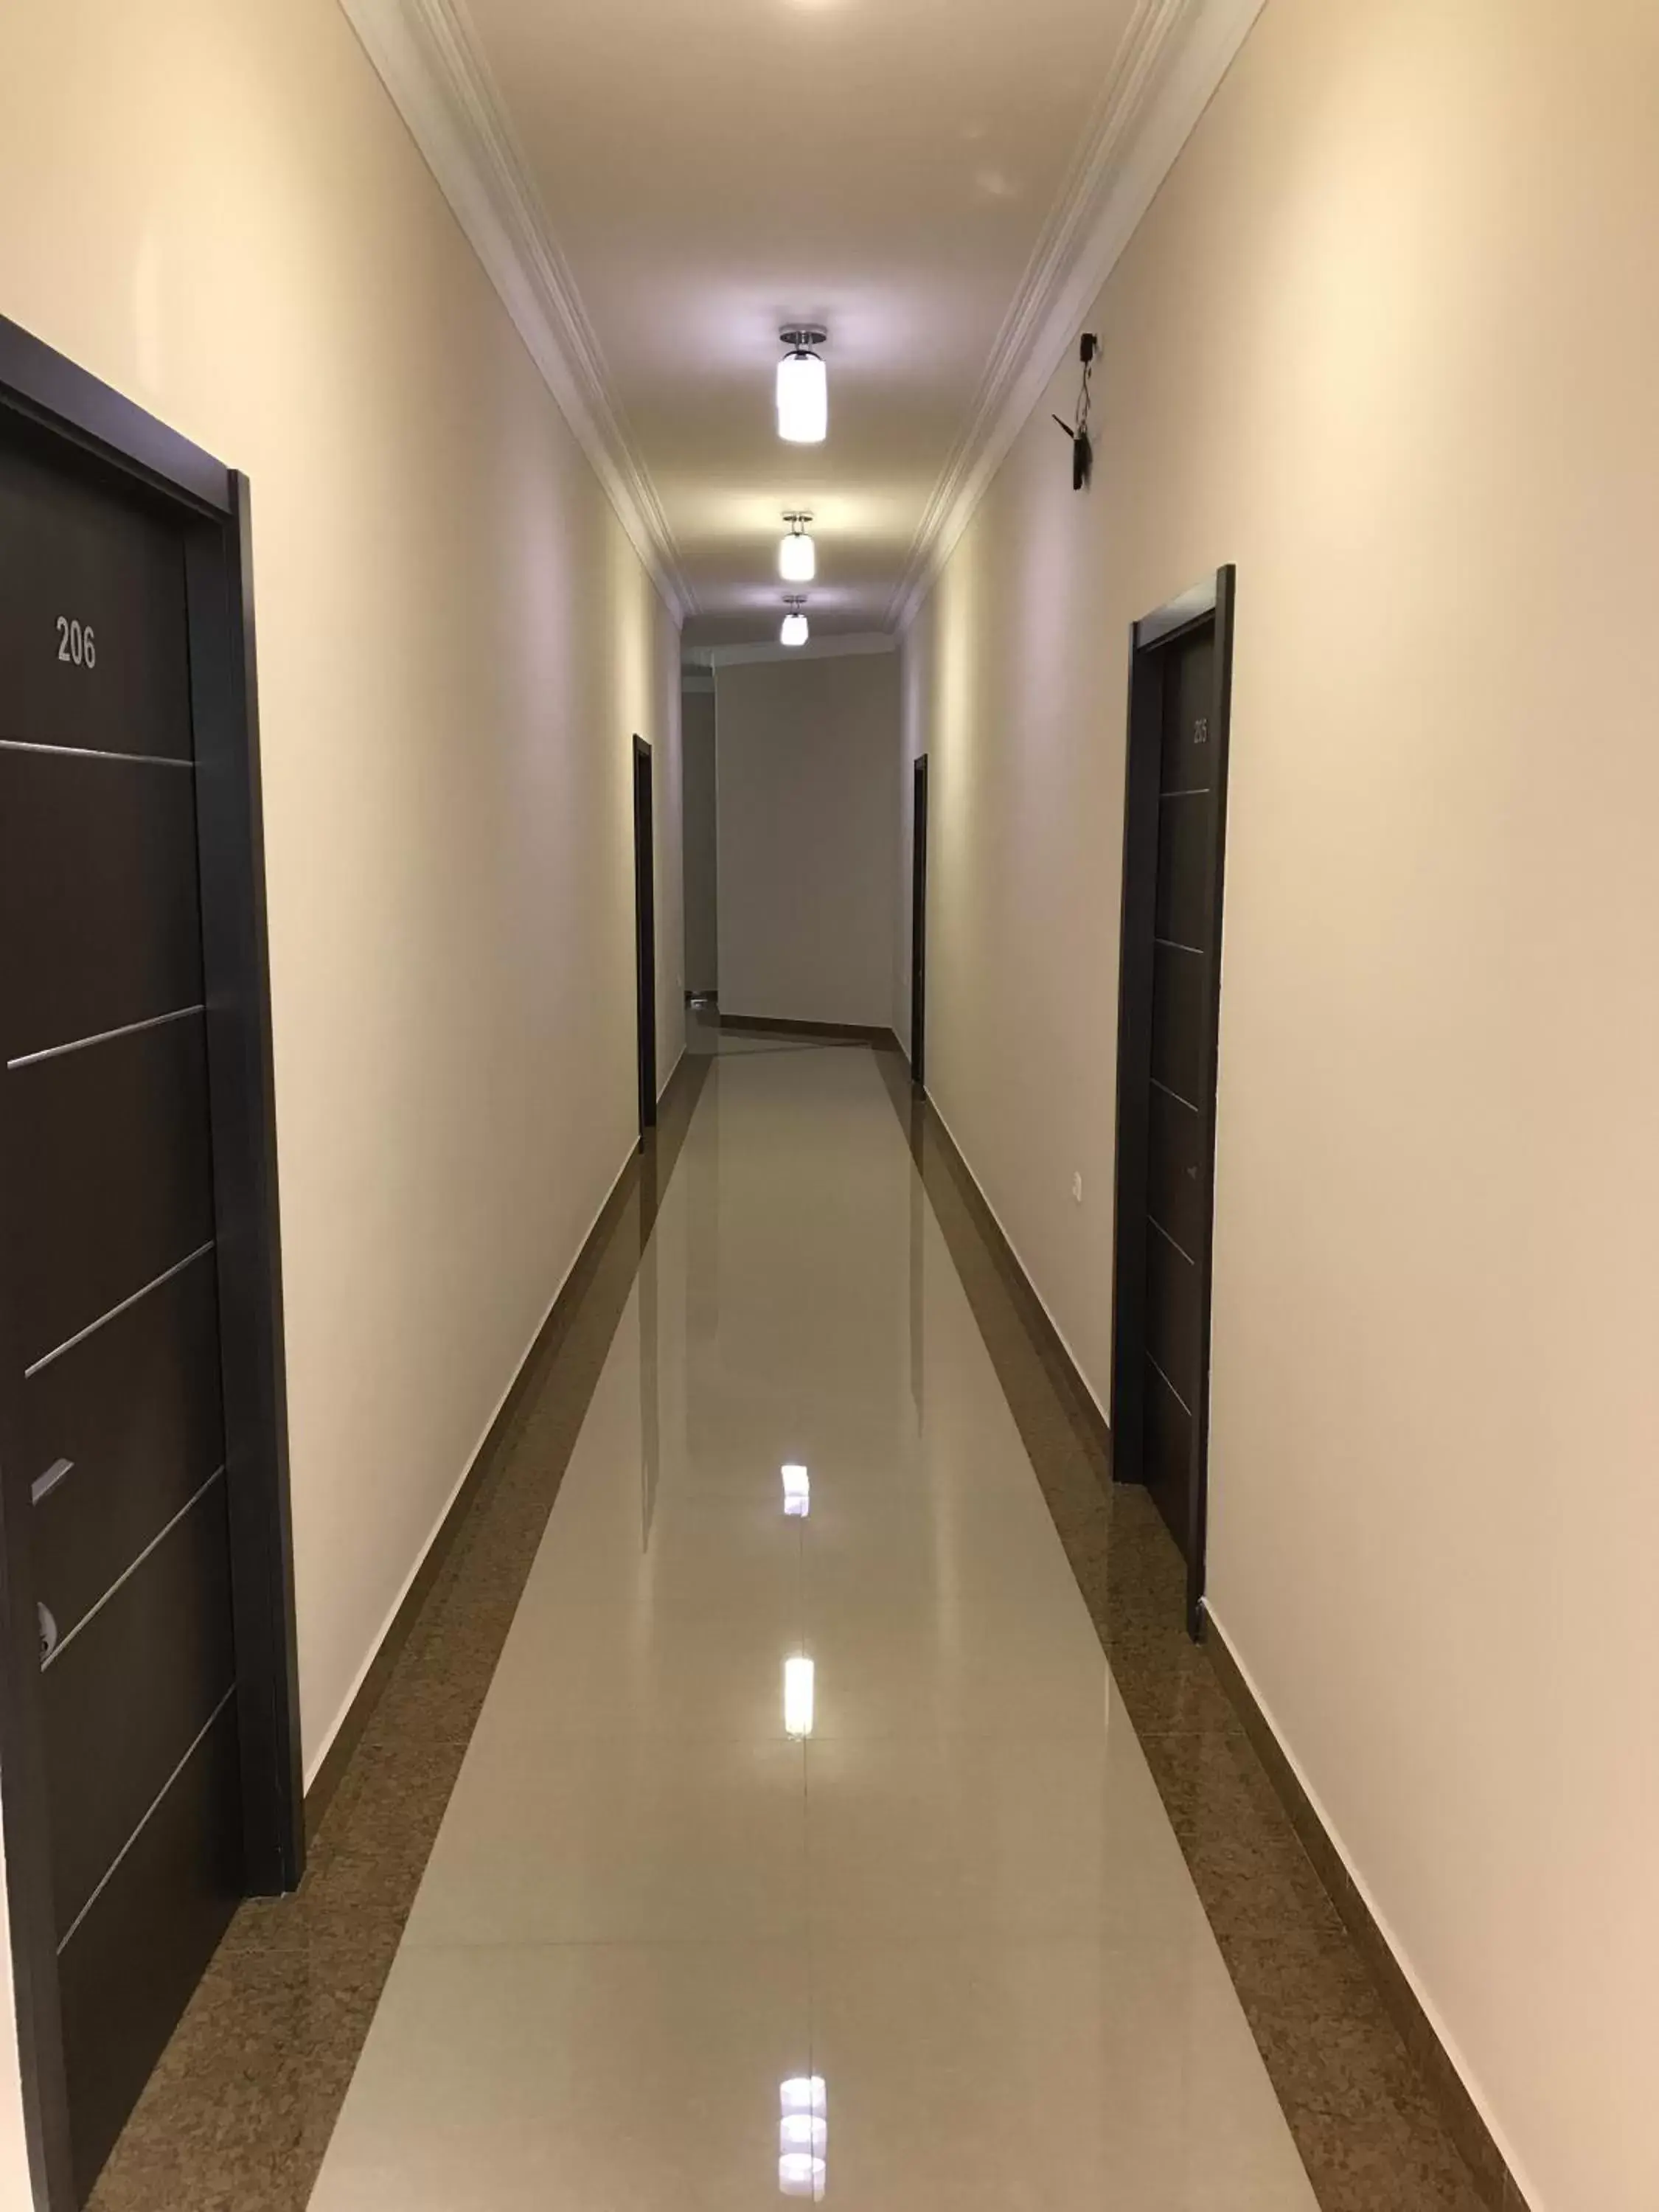 Floor plan in Capital Hotel